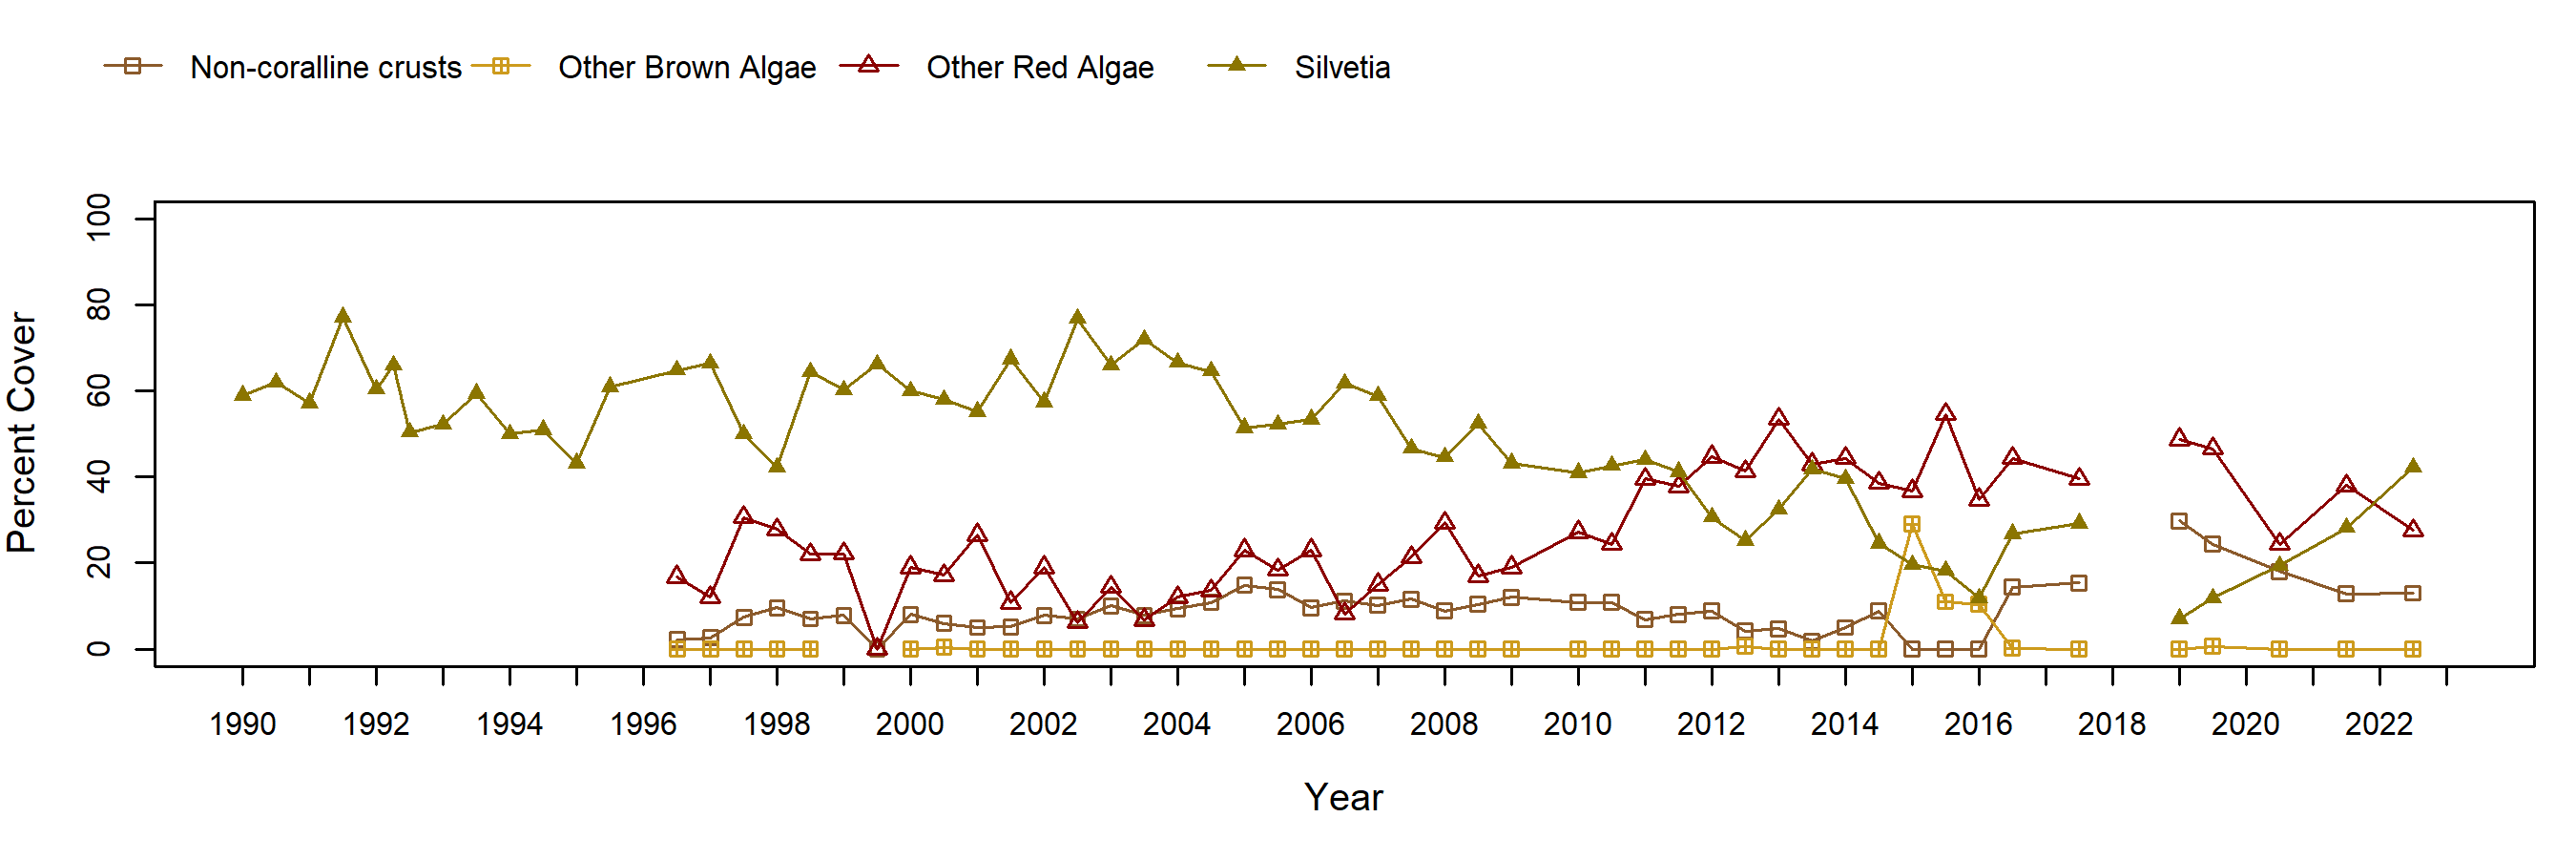 Cabrillo I Silvetia trend plot